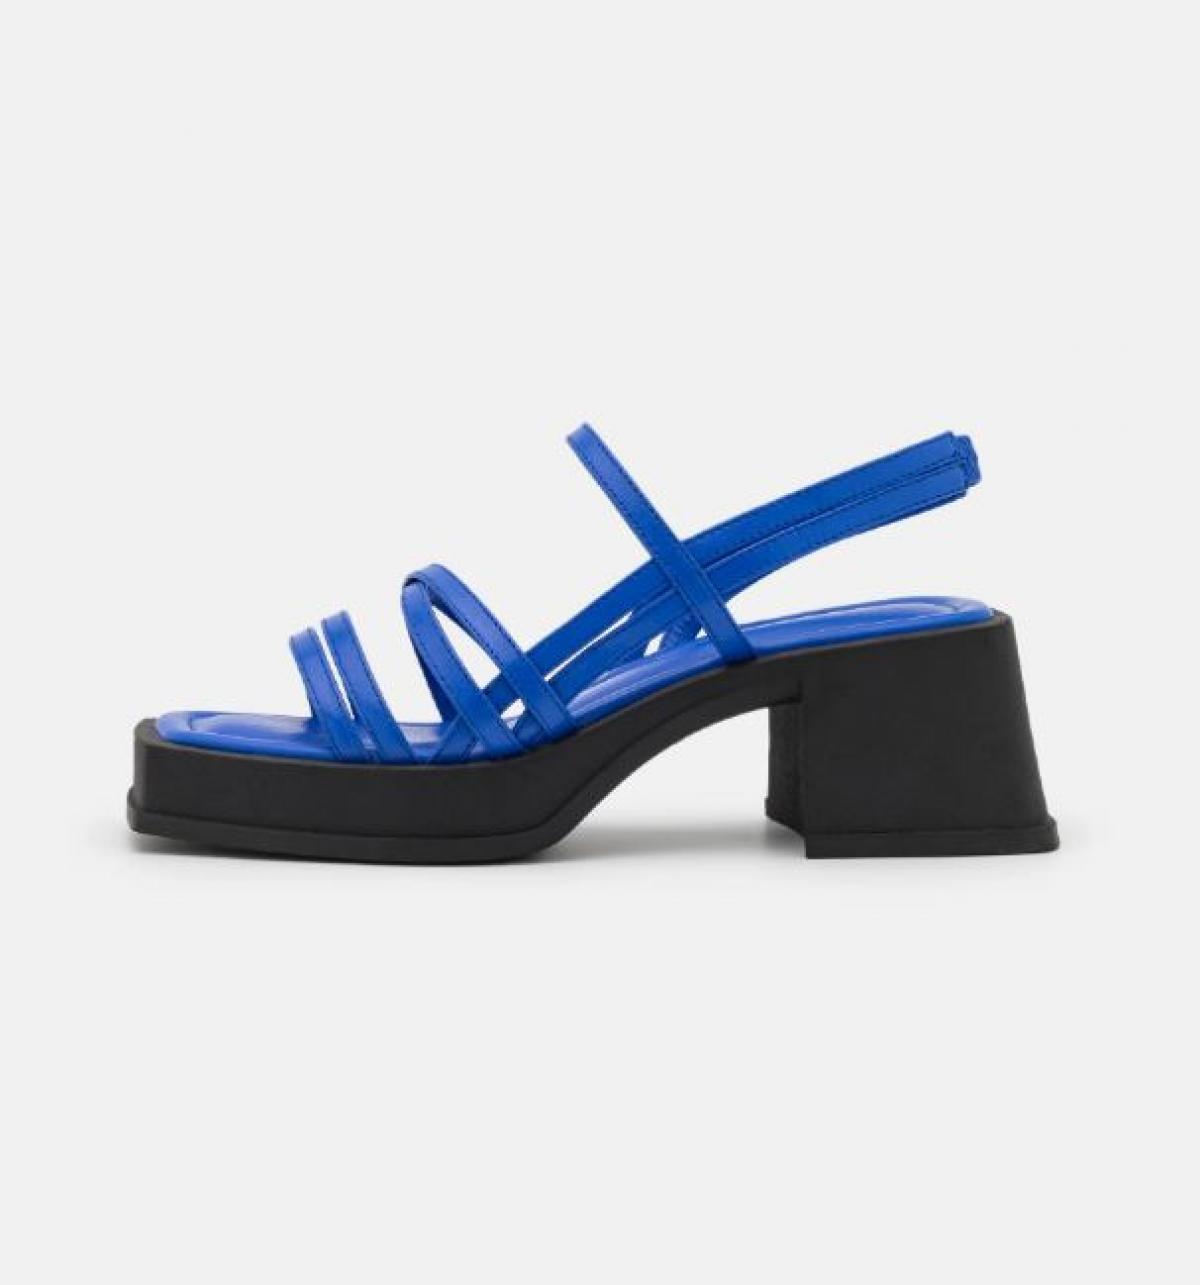 Kobaltblauwe sandaal met straps en blokhak